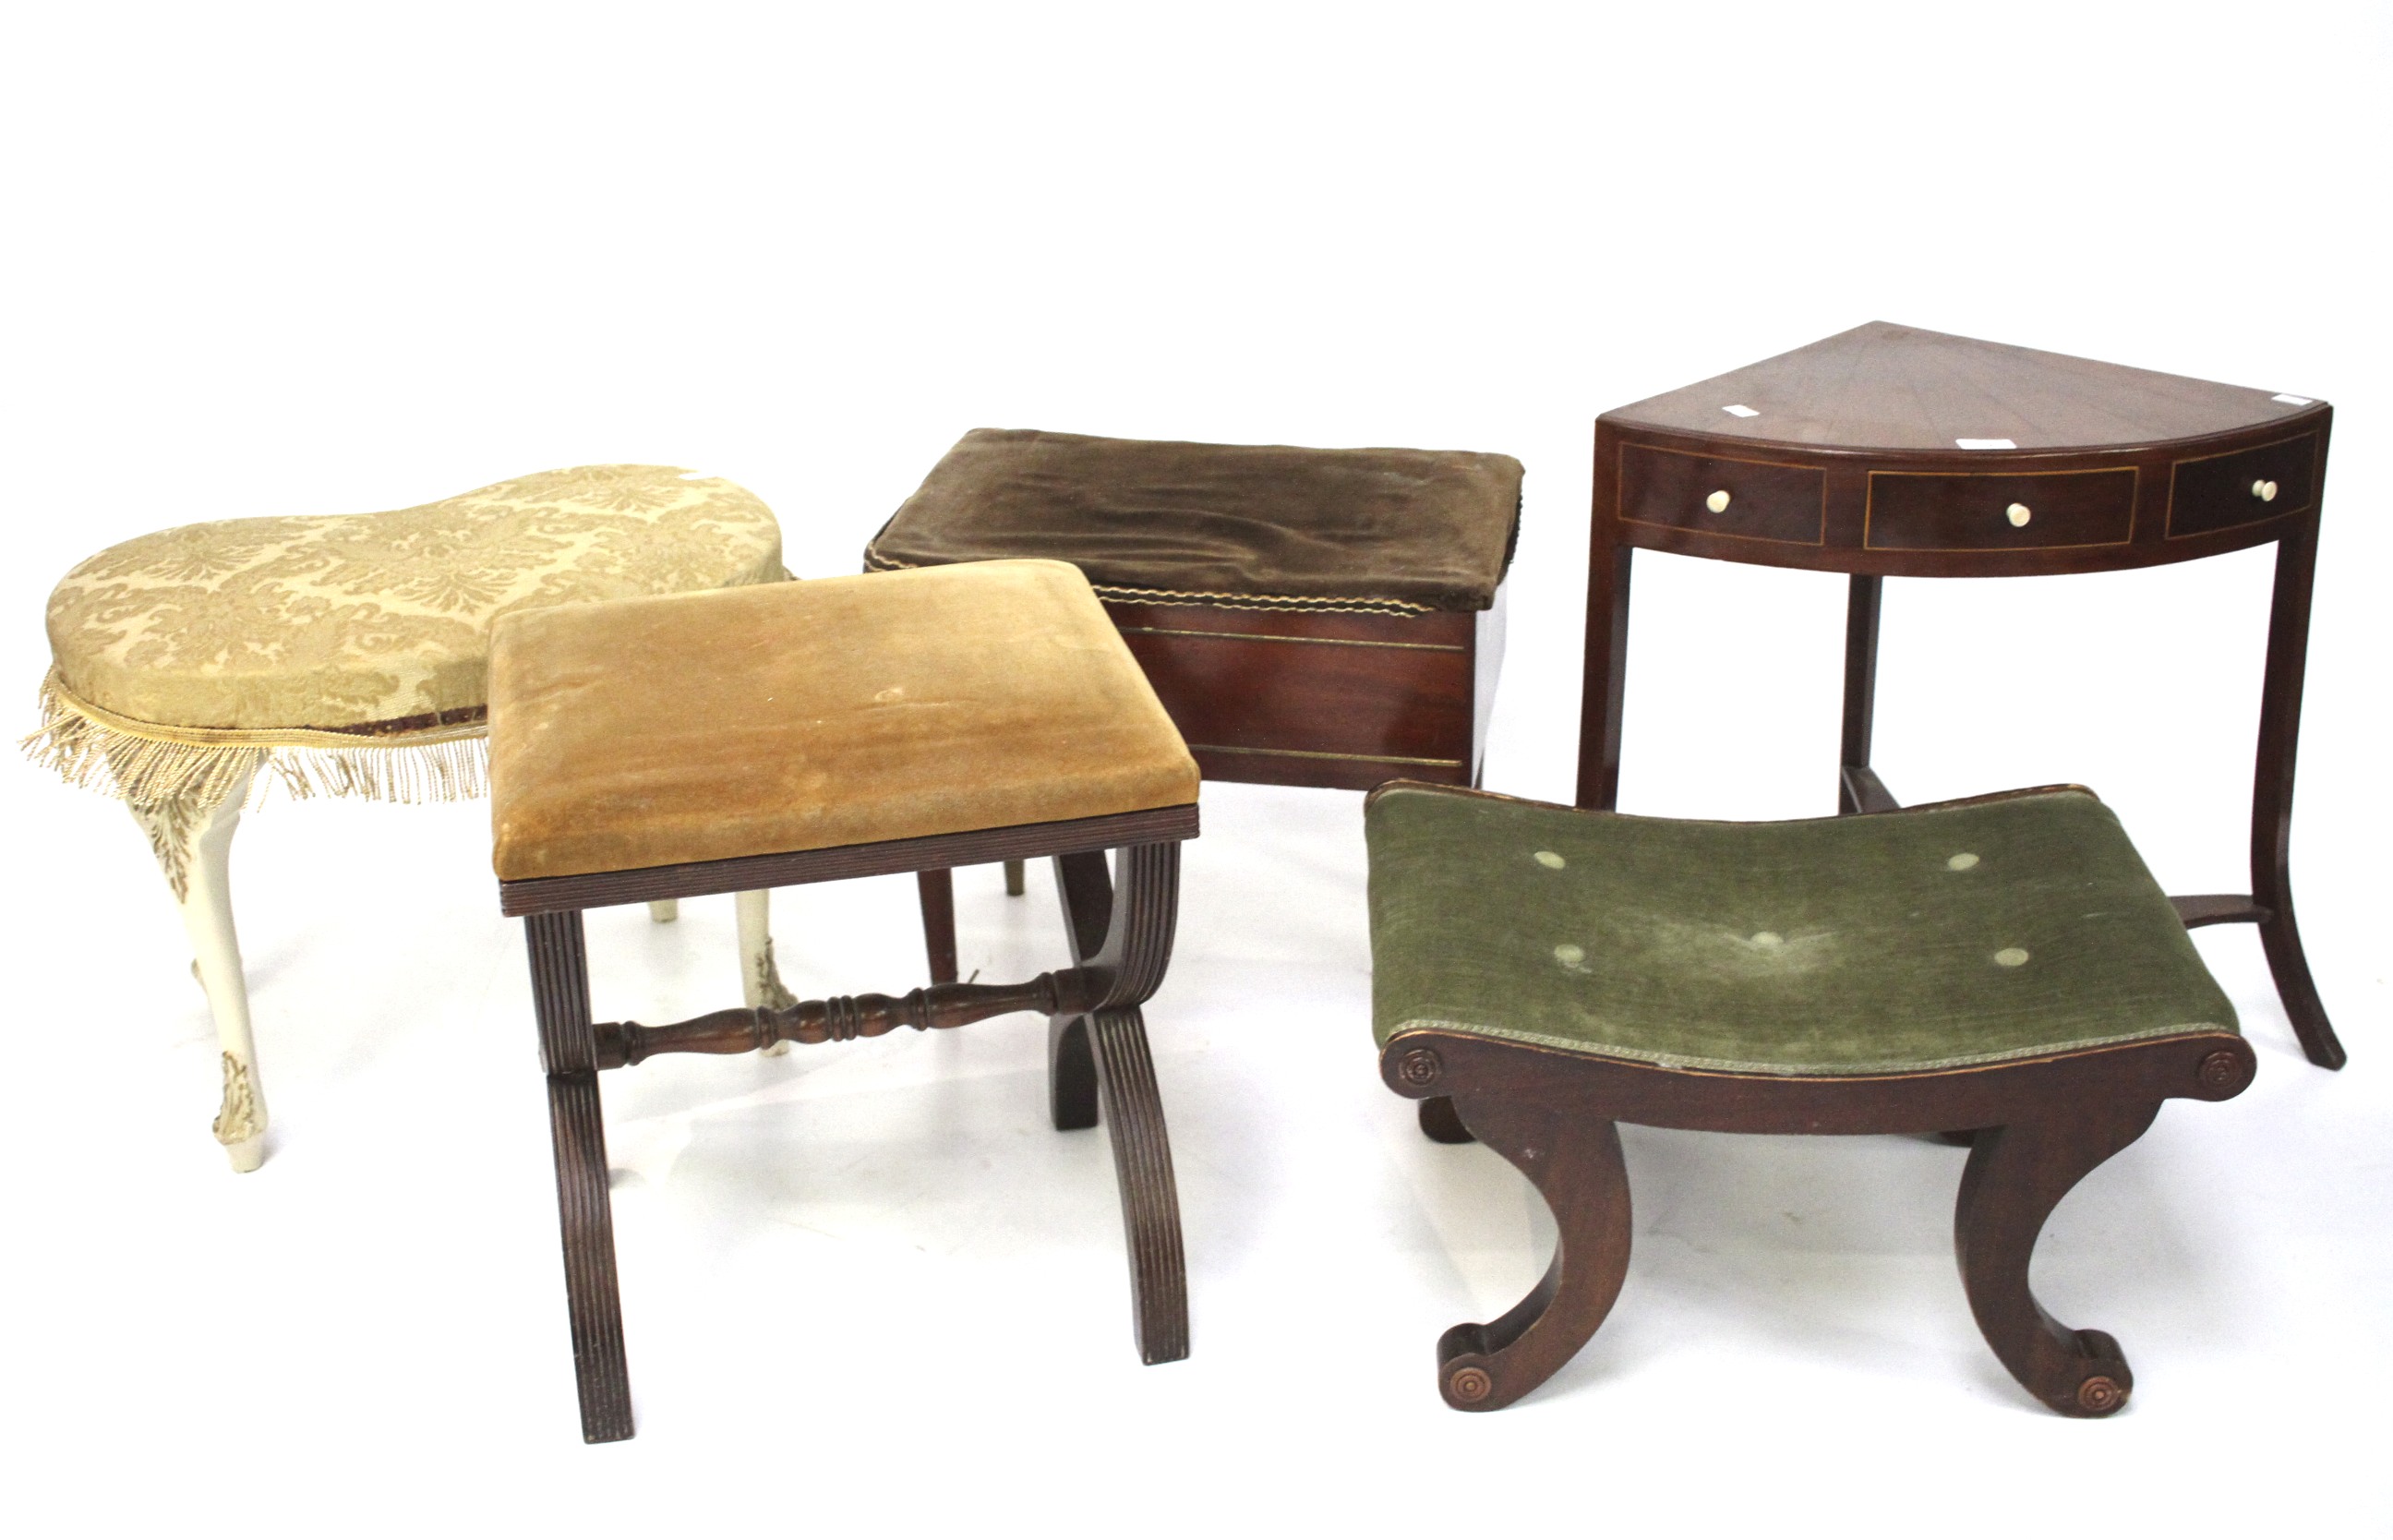 An assortment of furniture.